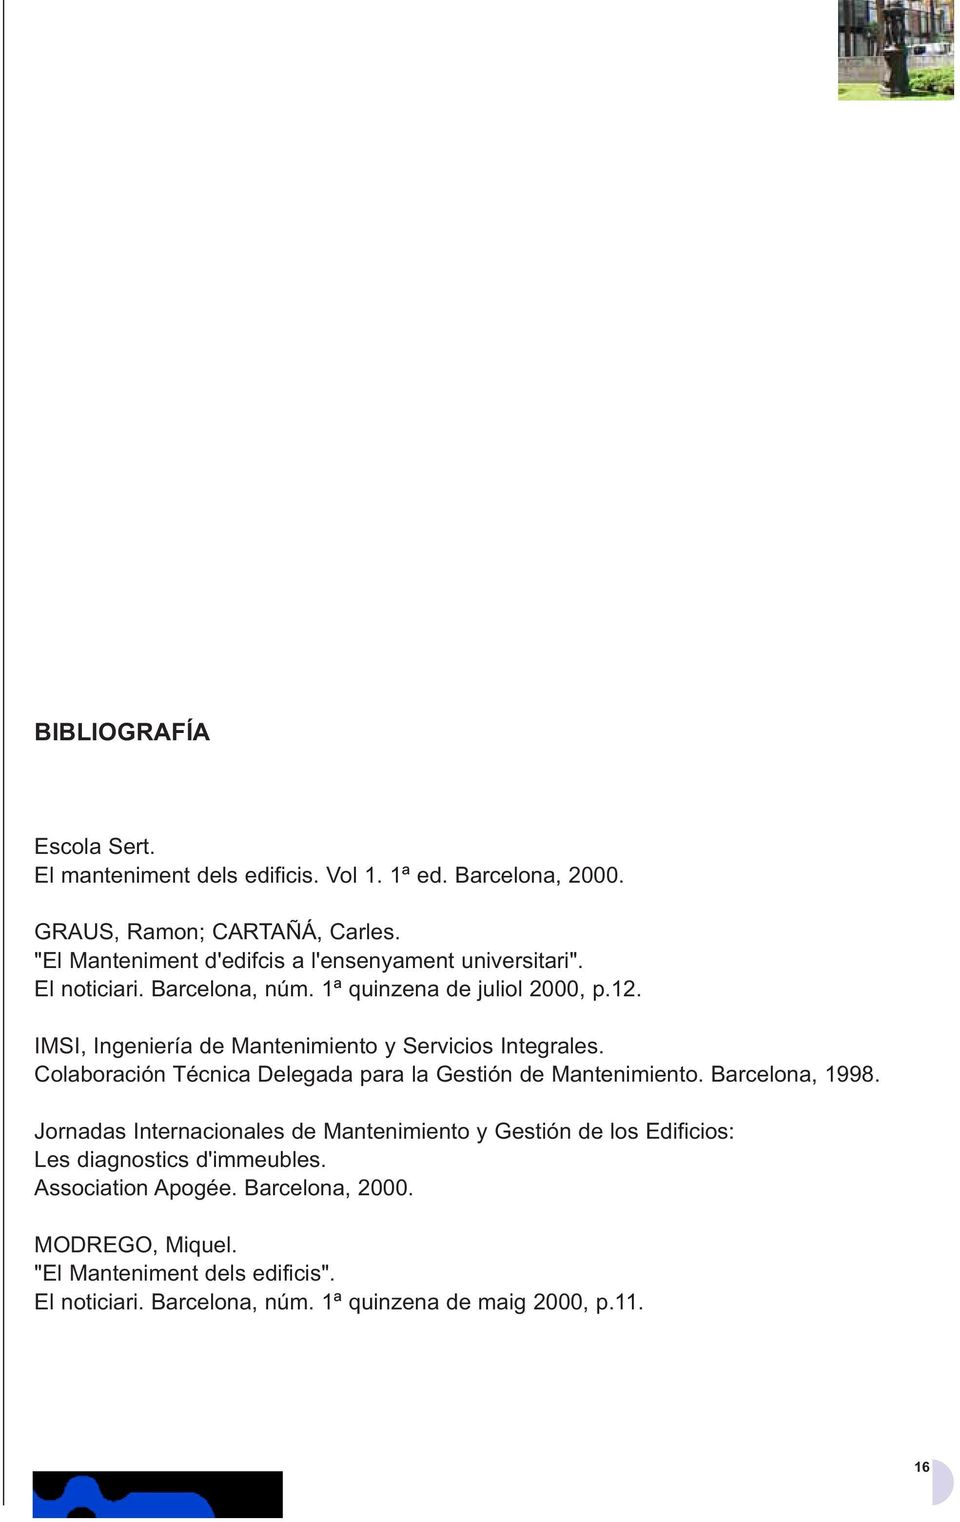 IMSI, Ingeniería de Mantenimiento y Servicios Integrales. Colaboración Técnica Delegada para la Gestión de Mantenimiento. Barcelona, 1998.